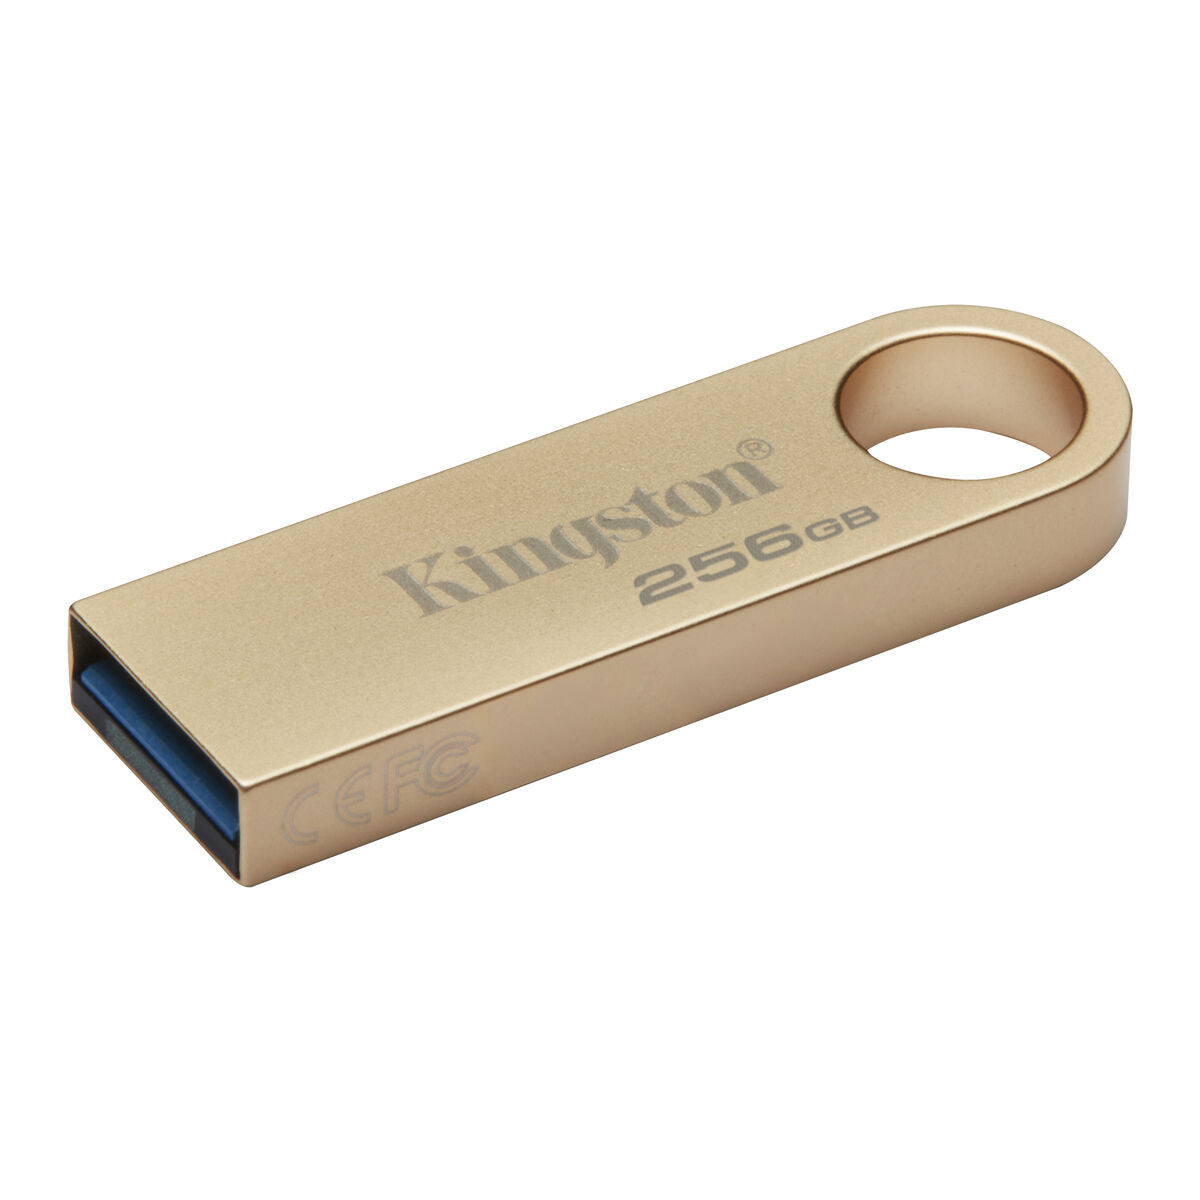 Memoria USB Kingston DTSE9G3/256GB Dorado 256 GB